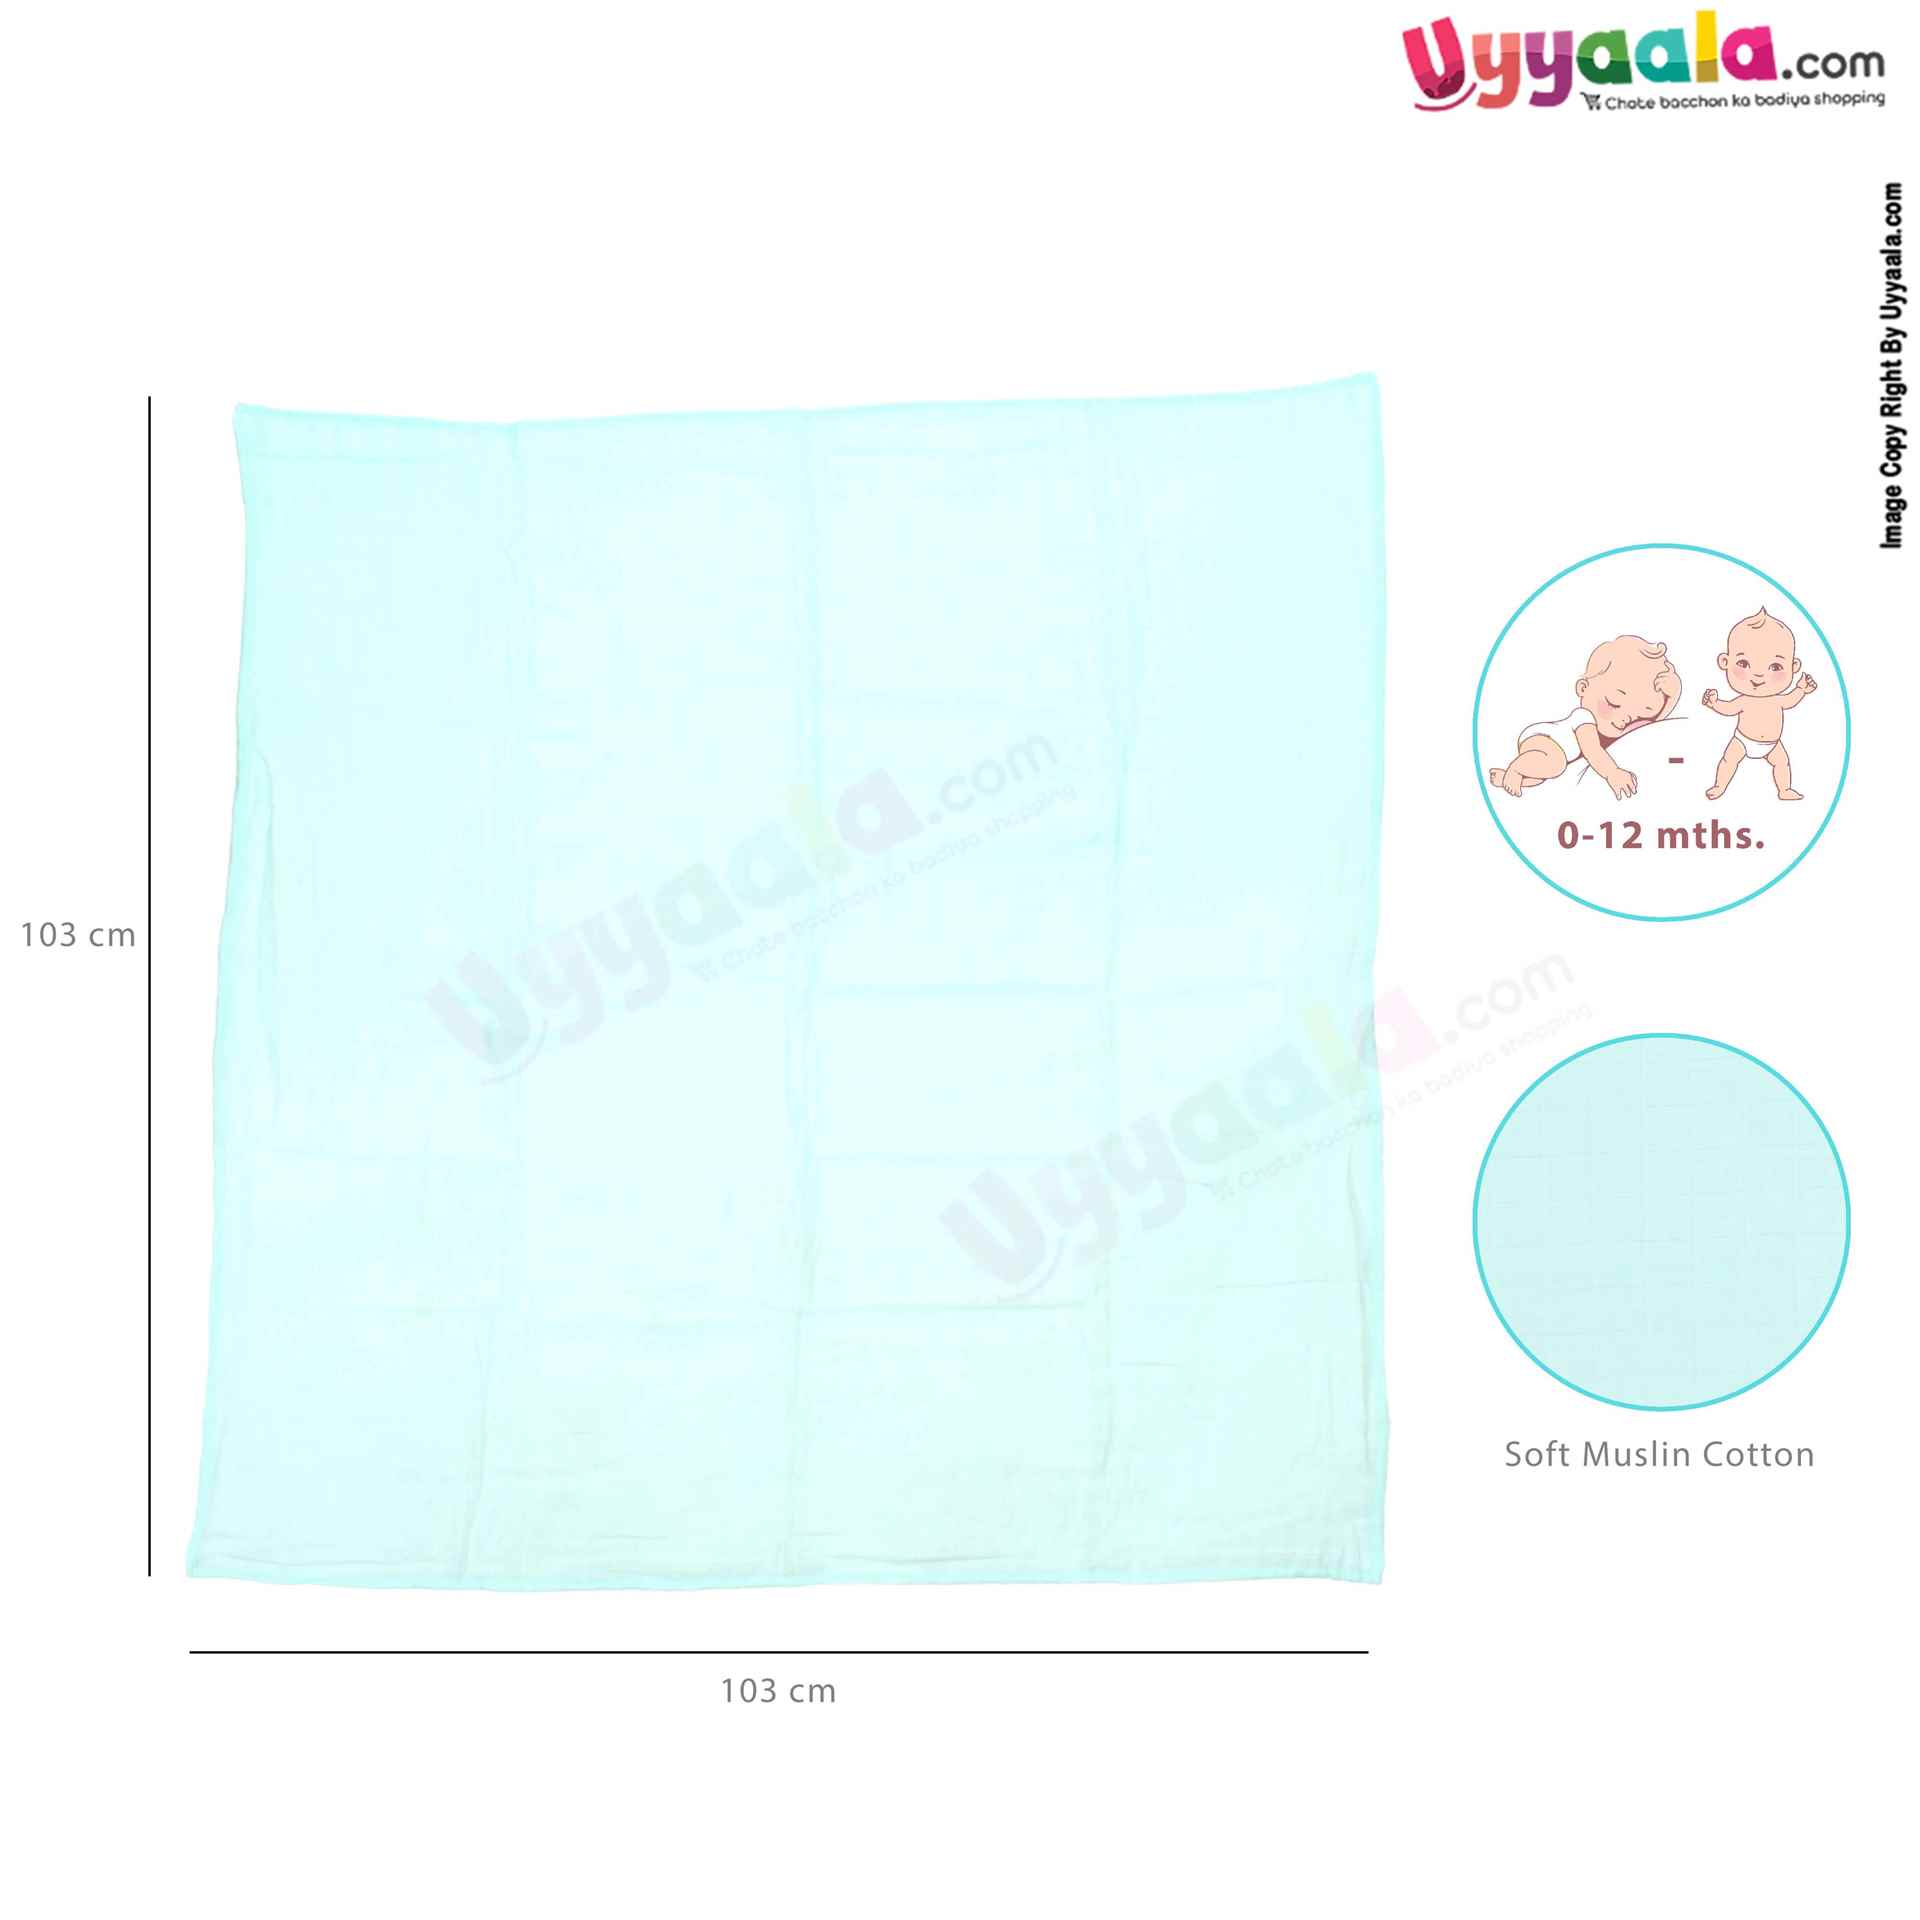 NUM-NUM Muslin Cotton Wrapper for Babies 3p Set 0+m Age, Size (103*103cm)-Multi Color